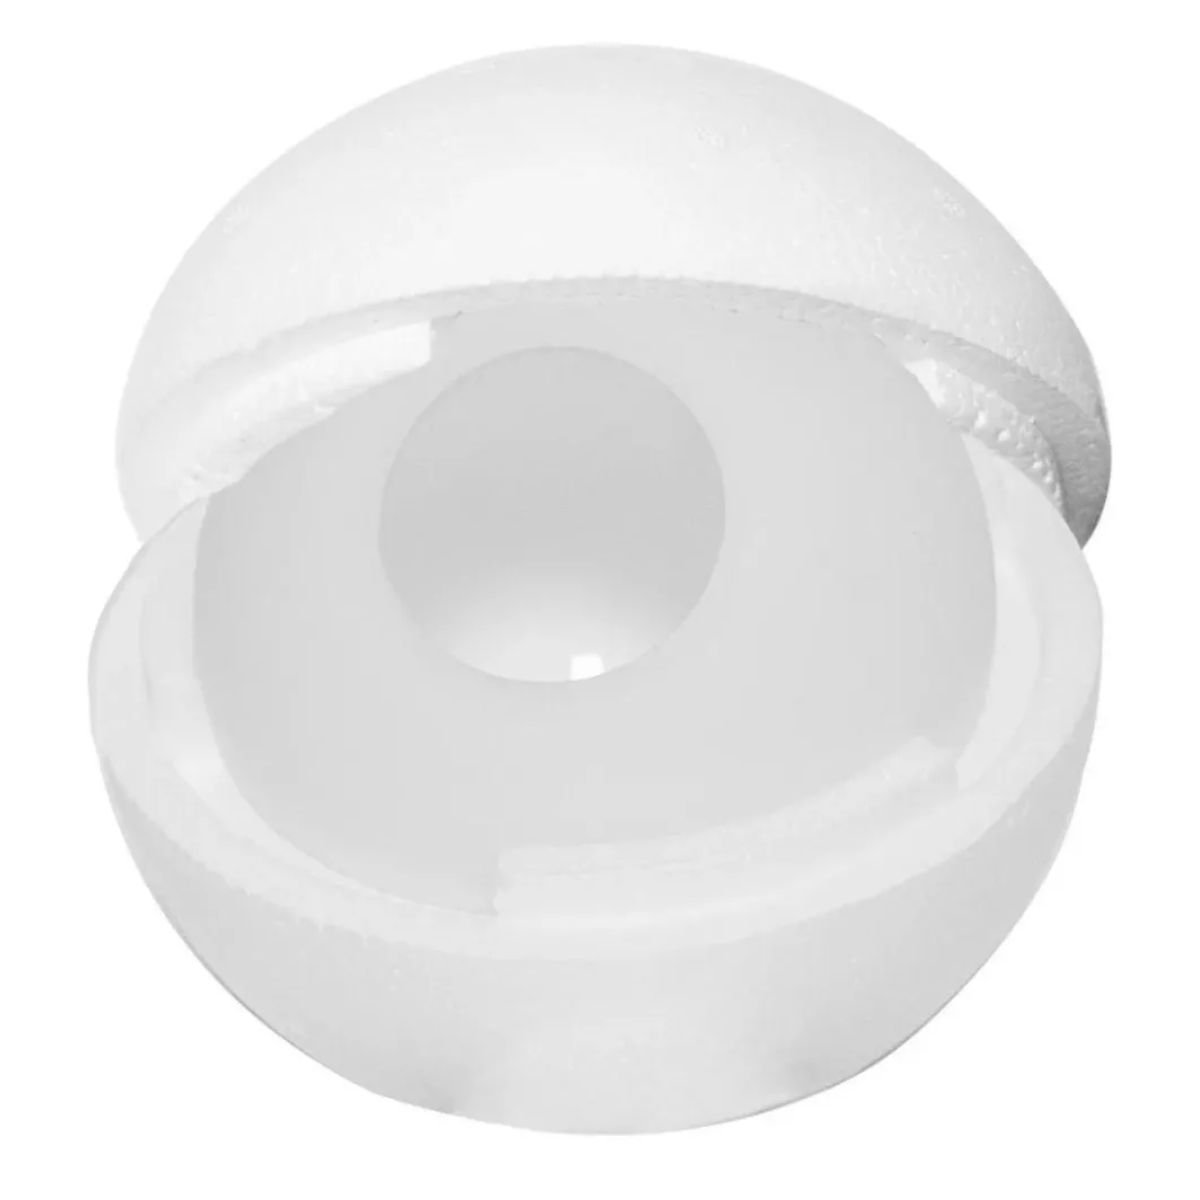 Vidro Globo/bola/esfera 12cm Diâmetro Vidro Fosco sem Colar - 8